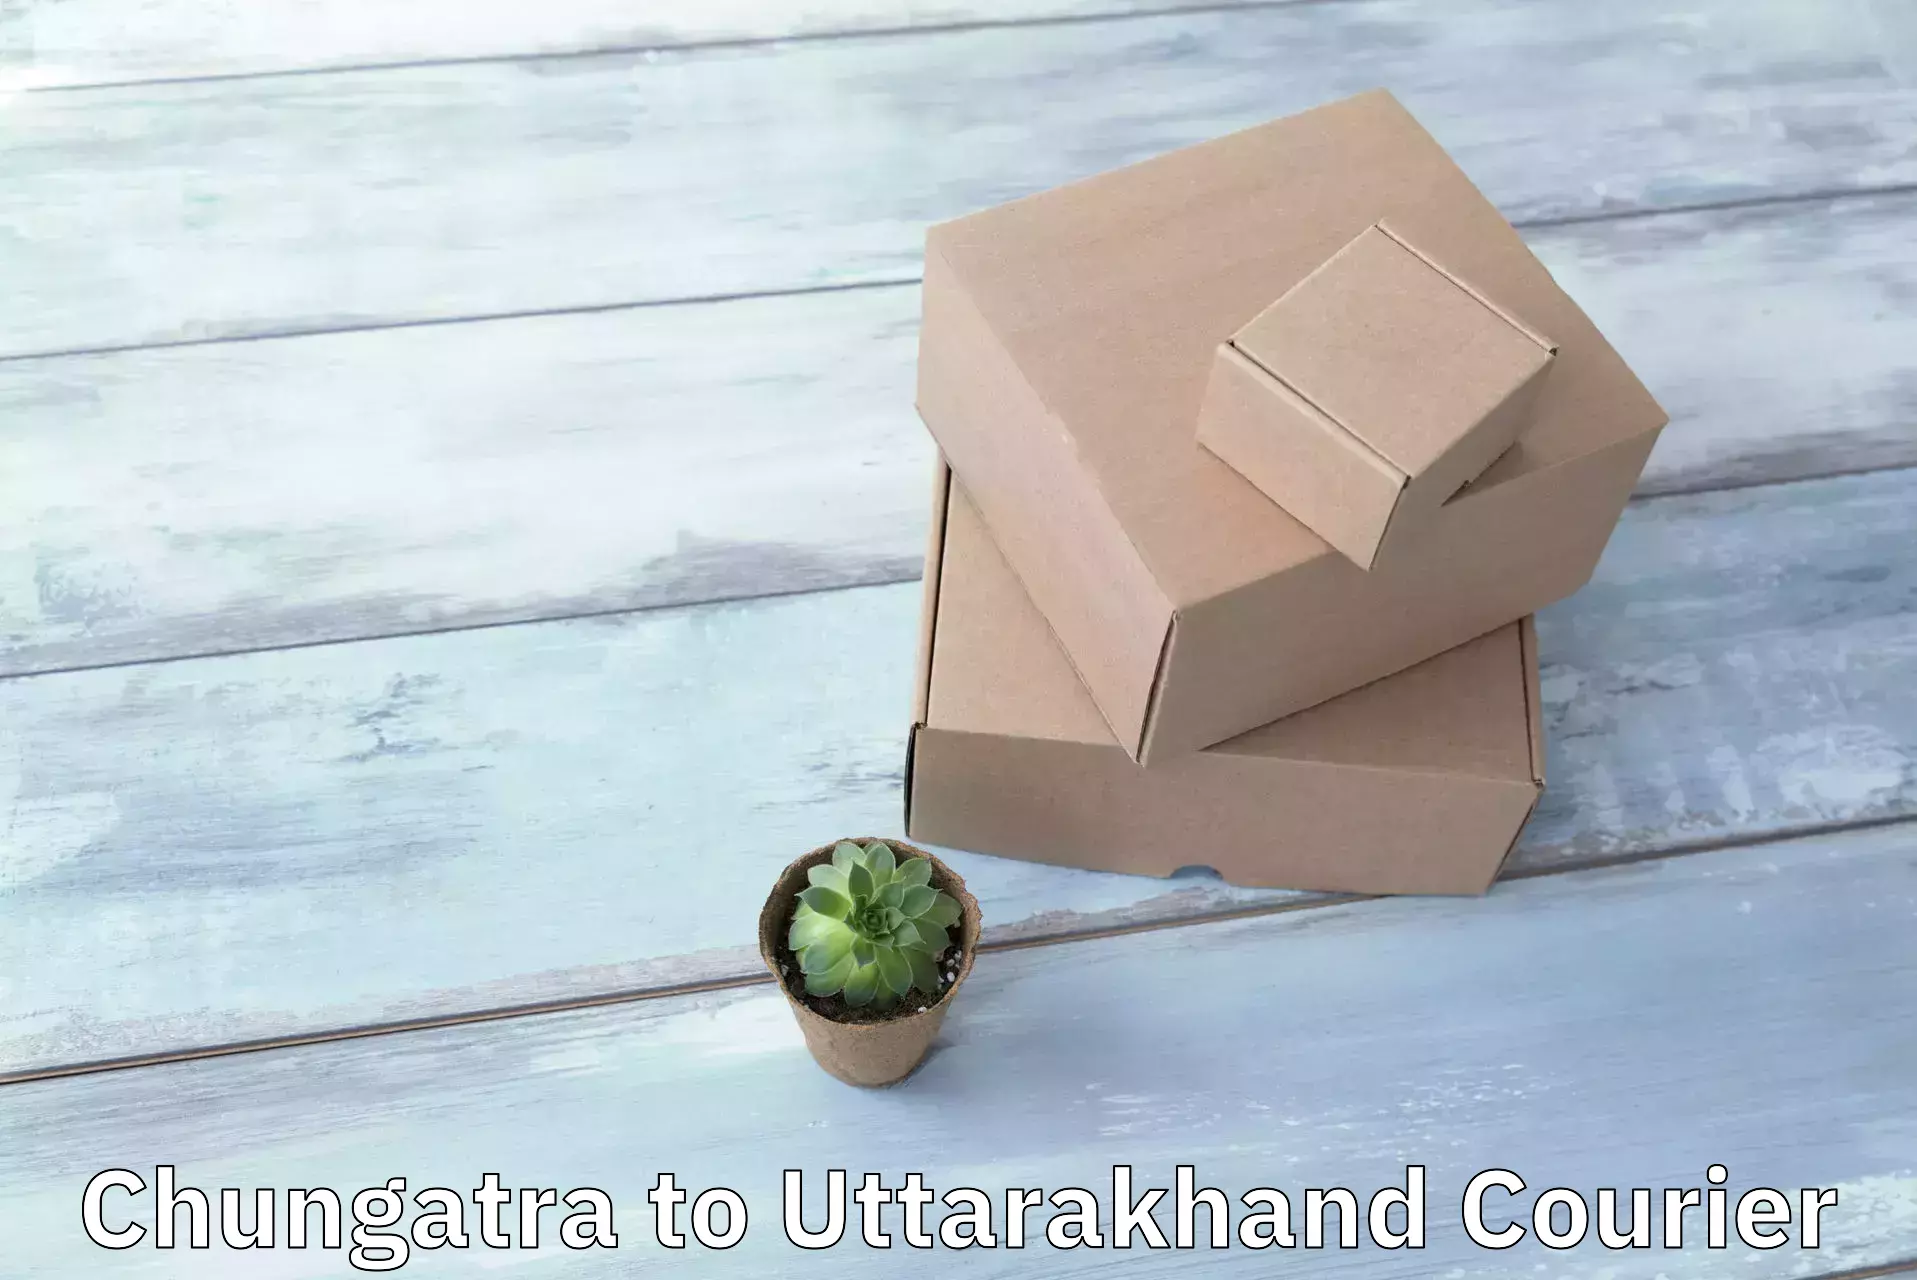 Secure shipping methods Chungatra to Uttarakhand